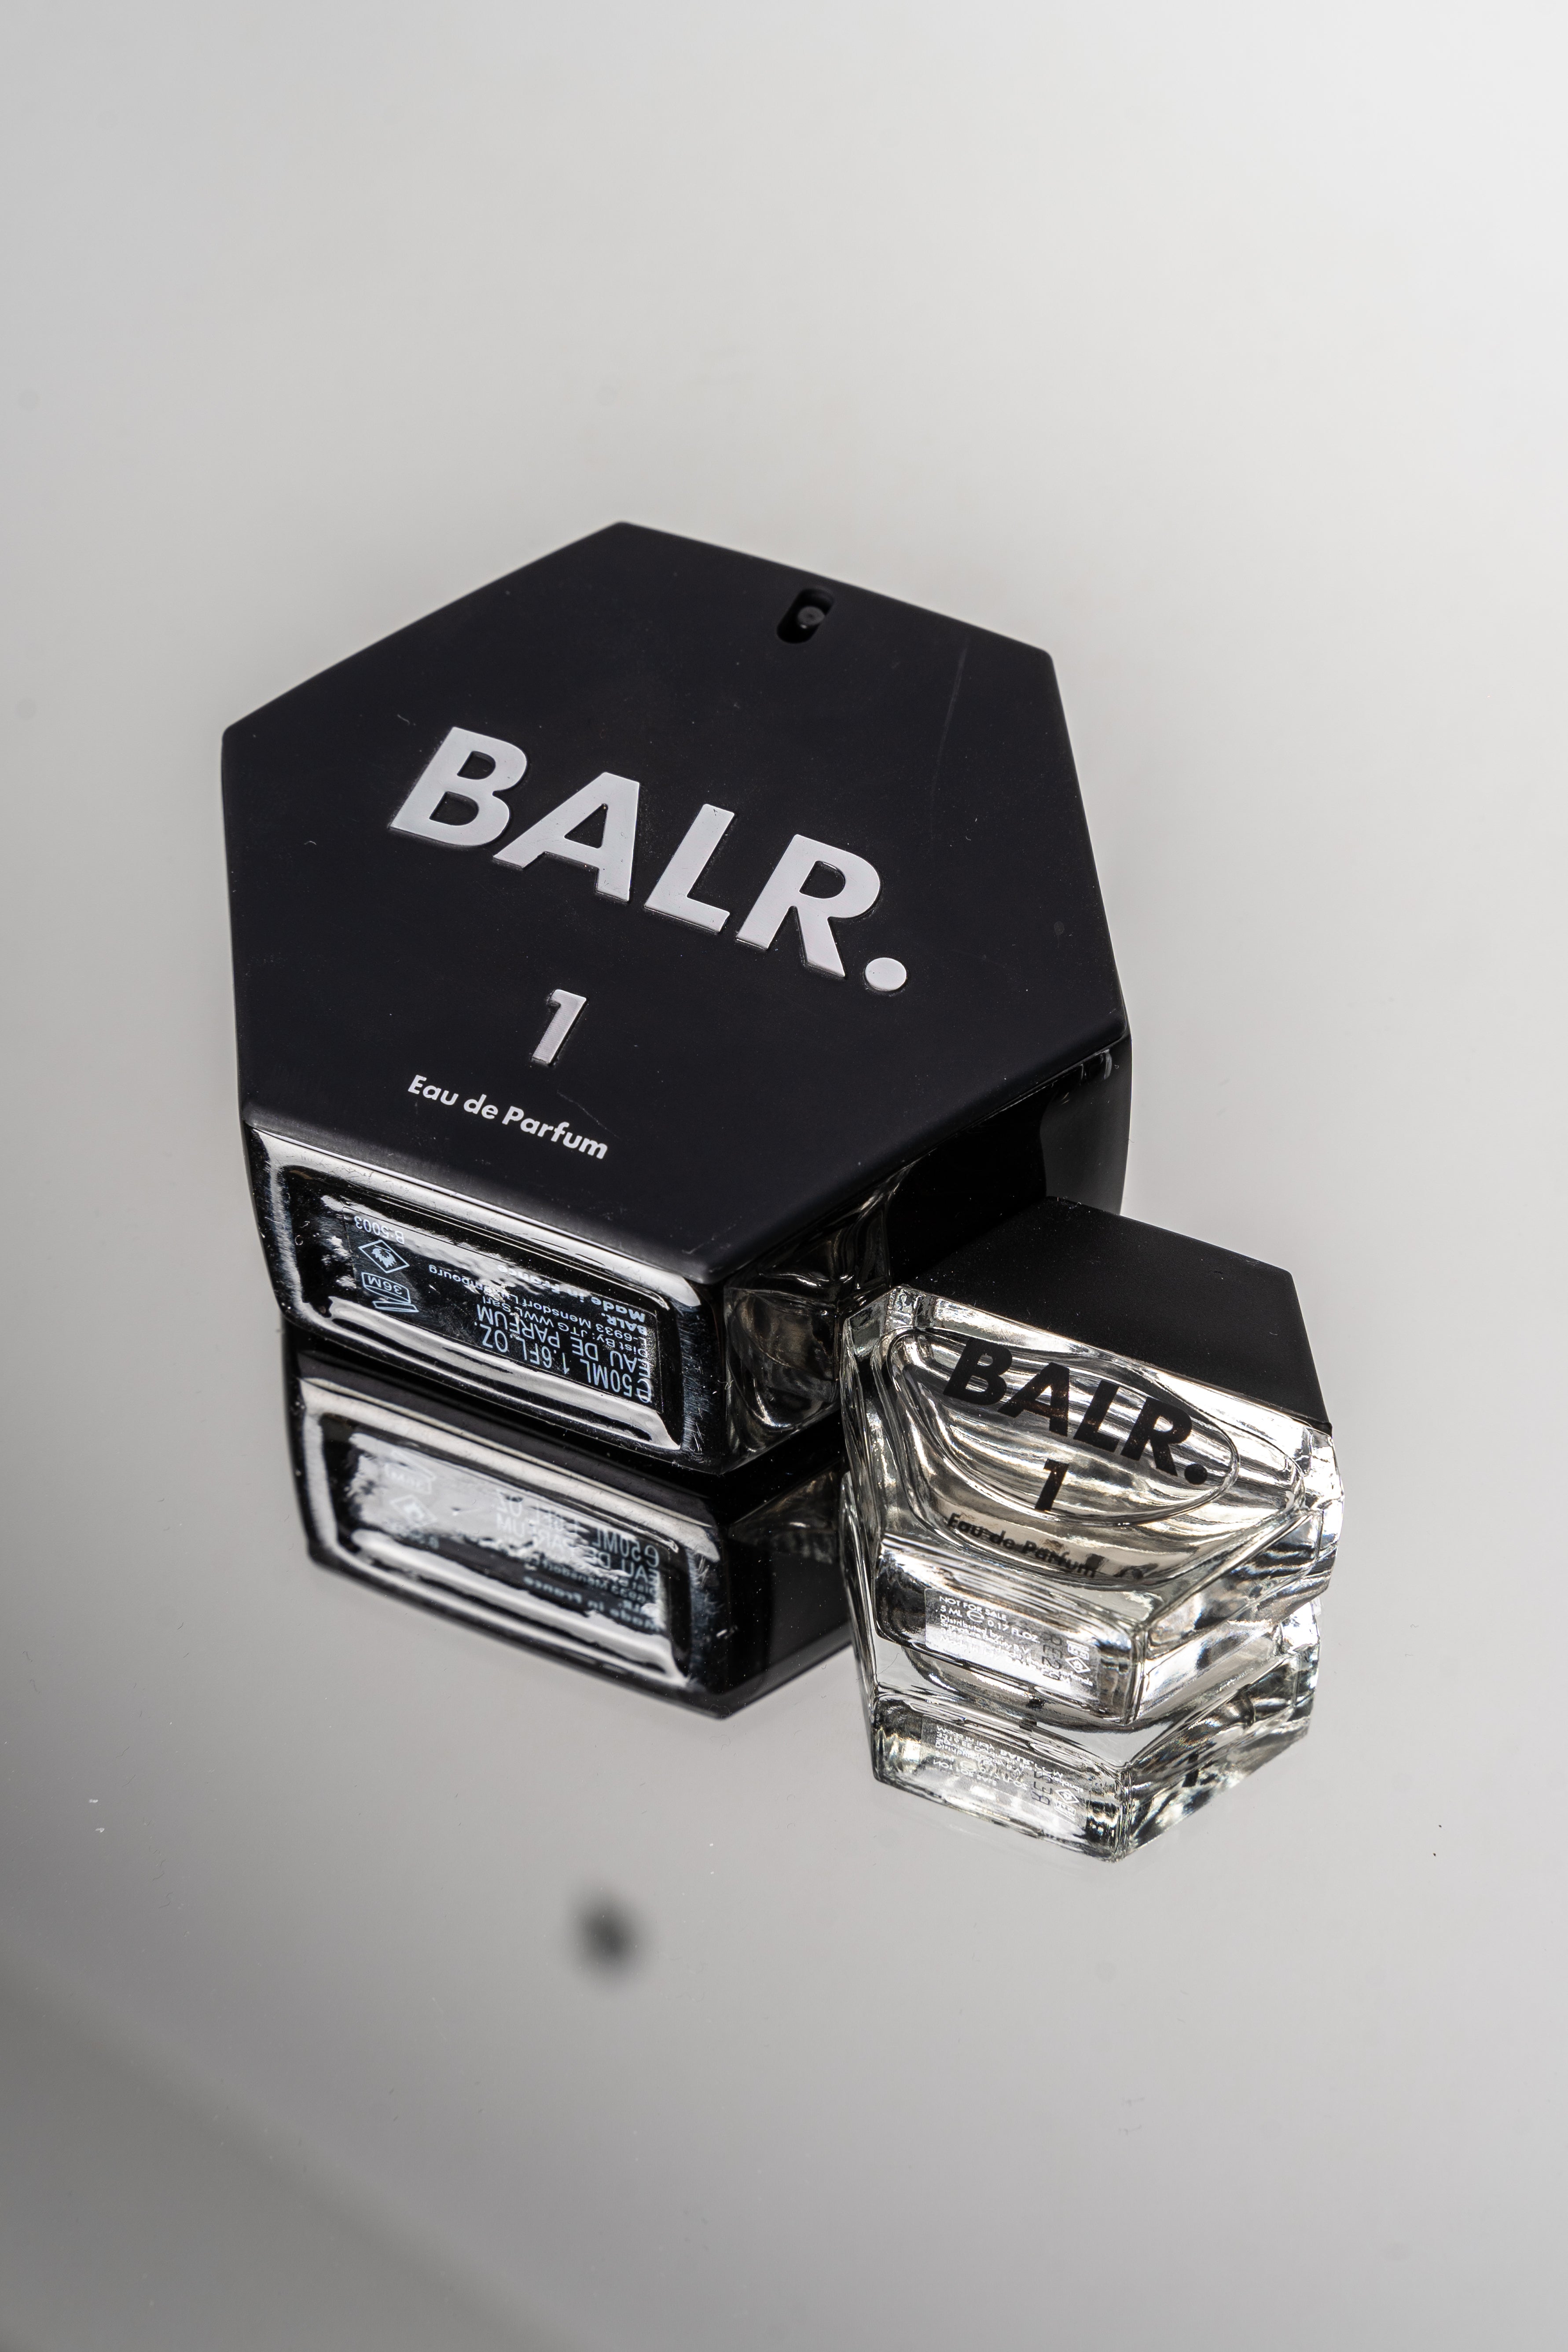 Balr-parfum-actie-december-6.jpg